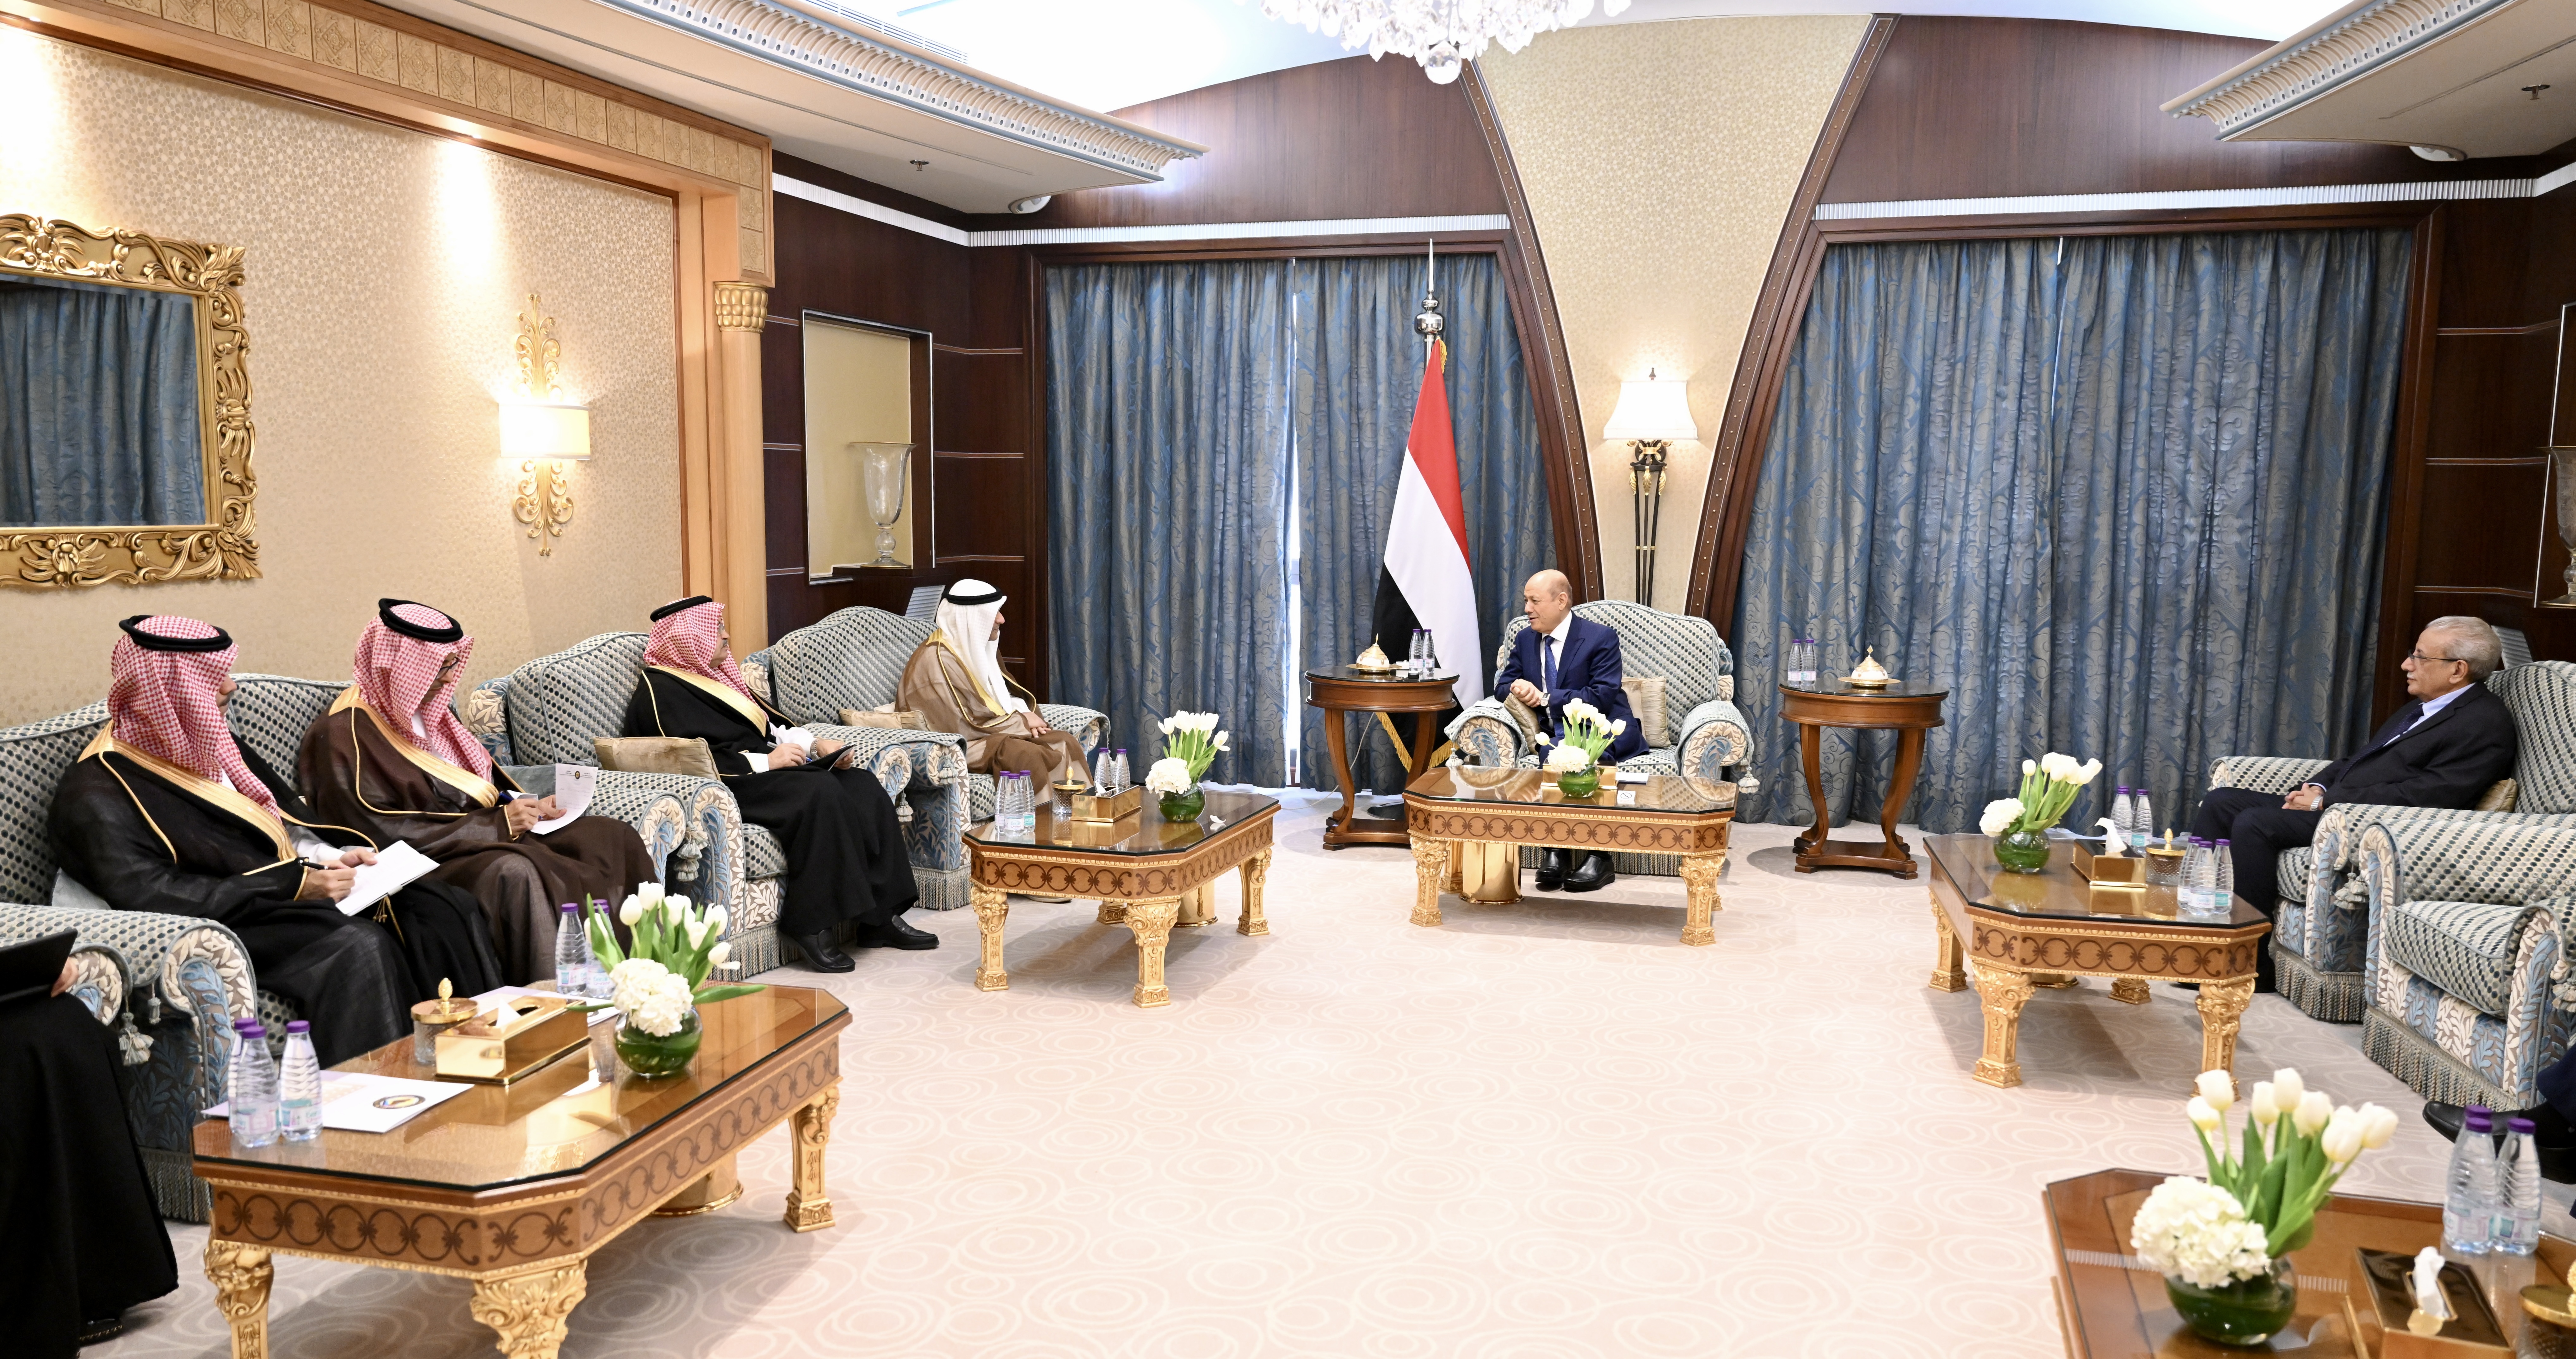 رئيس مجلس القيادة الرئاسي يشيد بدور مجلس التعاون في دعم اليمن وقضيته العادلة